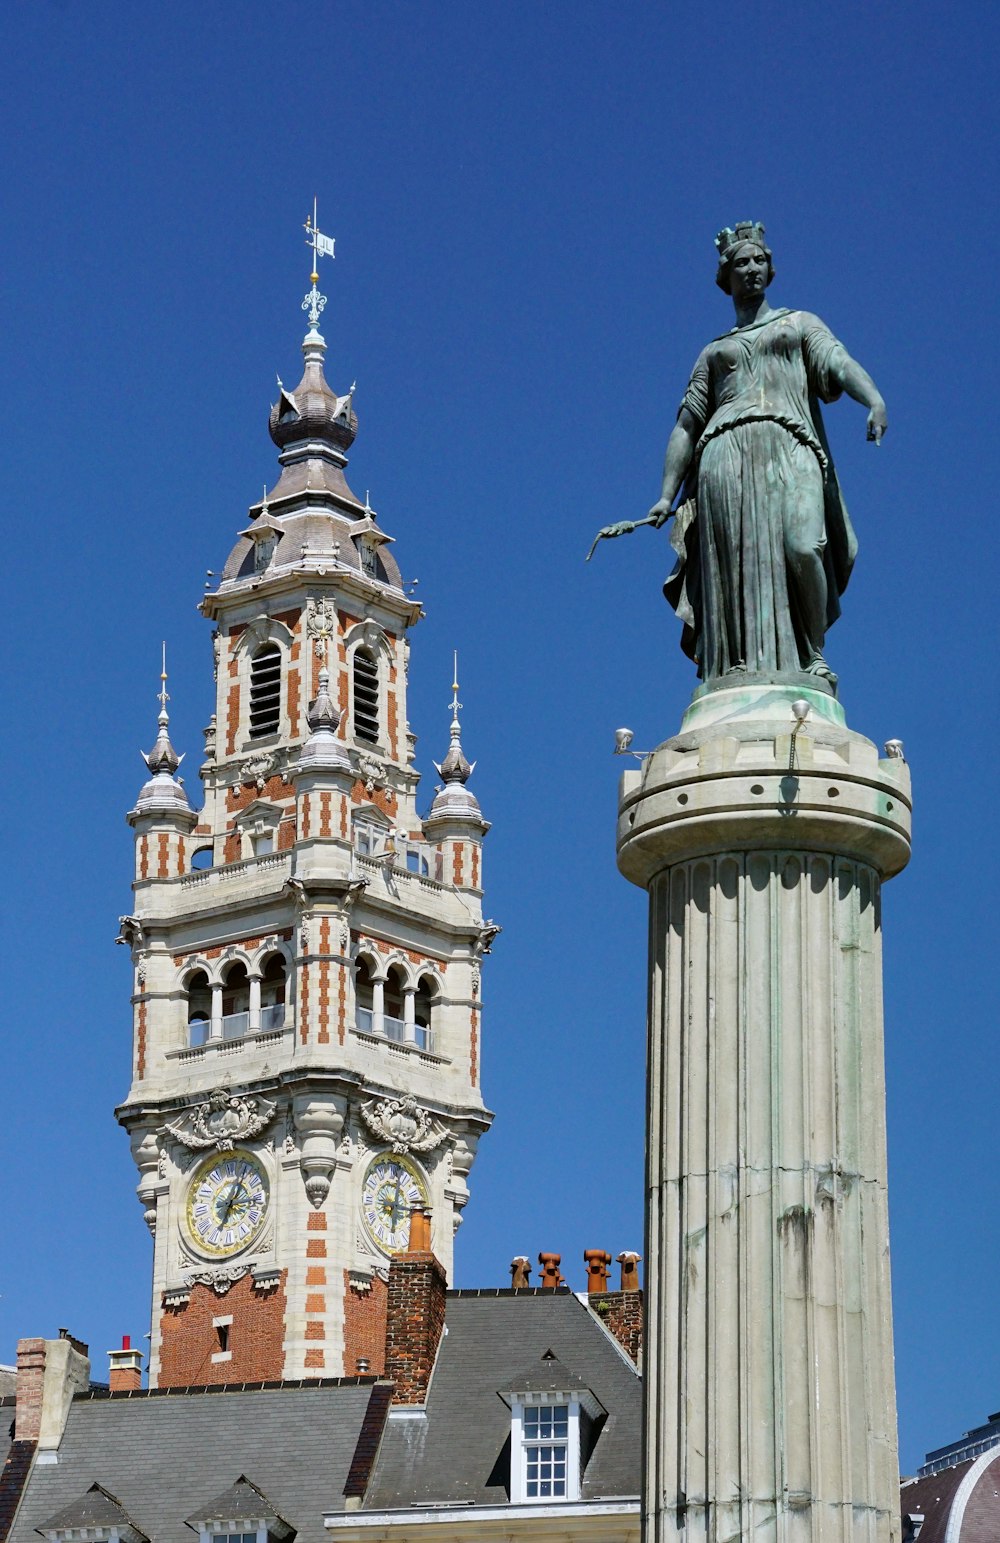 un grand bâtiment avec une tour de l’horloge à côté d’une statue